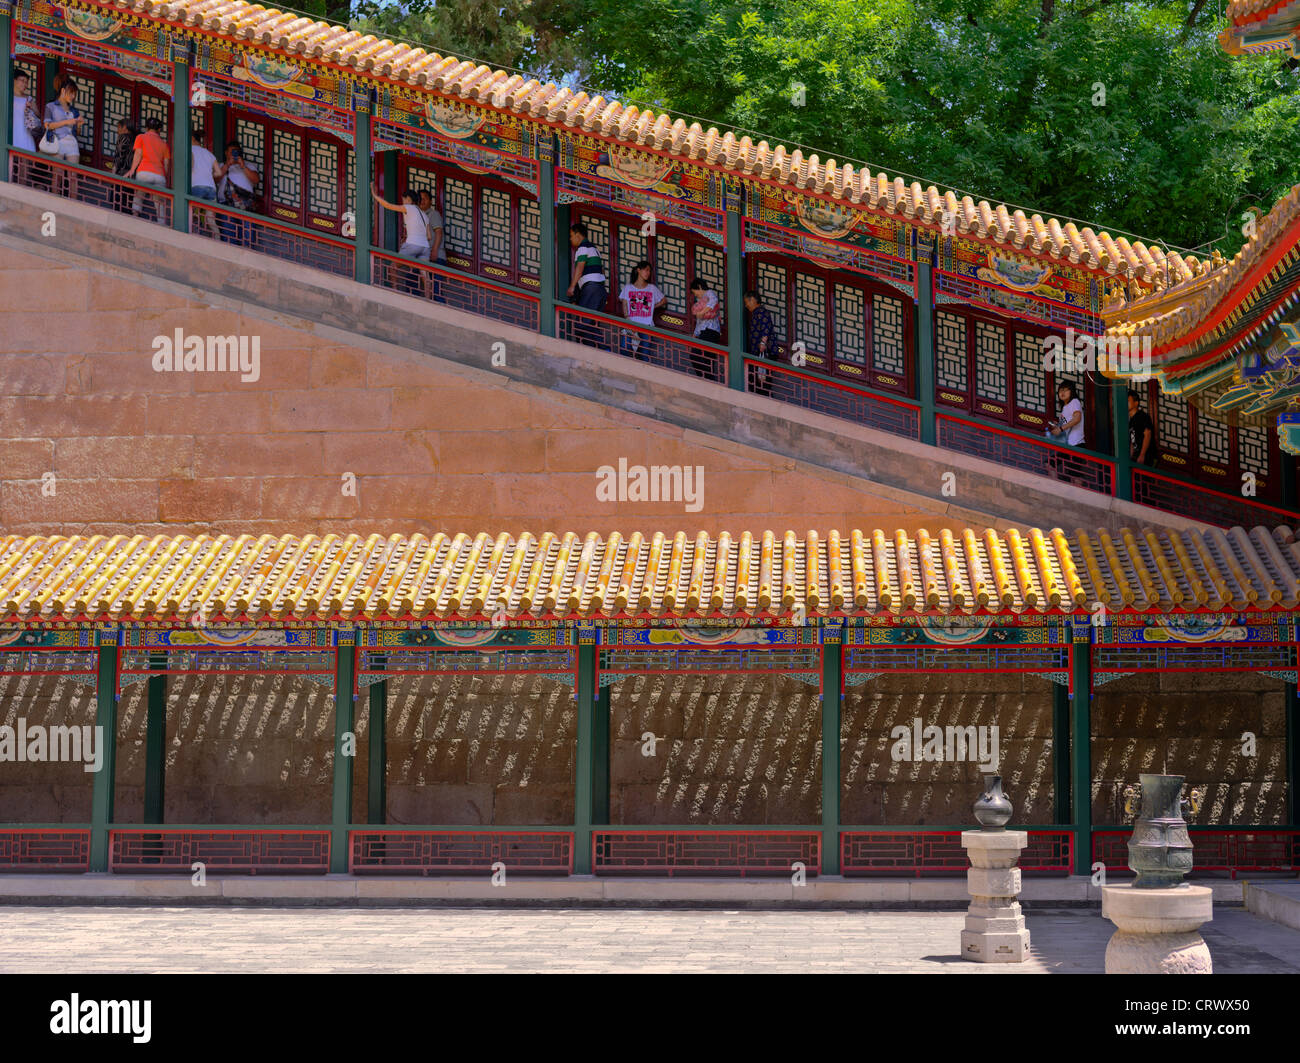 Subir a la Torre del incienso budista por el sideway escaleras. El Palacio de Verano. Beijing. China Foto de stock